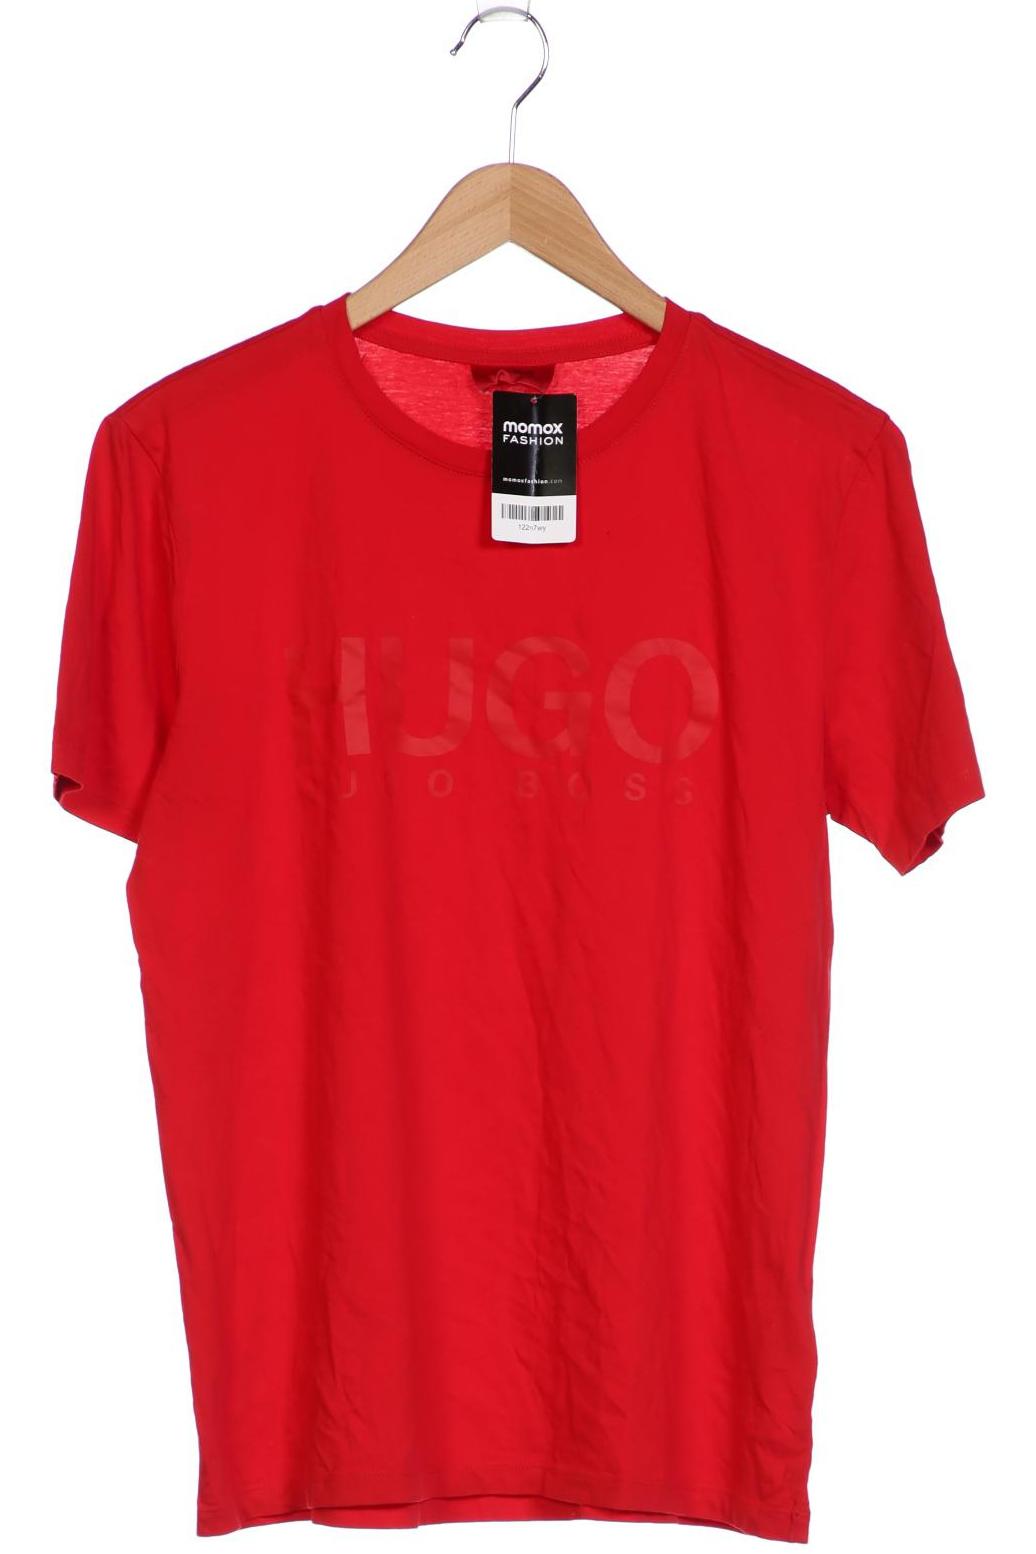 HUGO by Hugo Boss Herren T-Shirt, rot von HUGO by Hugo Boss